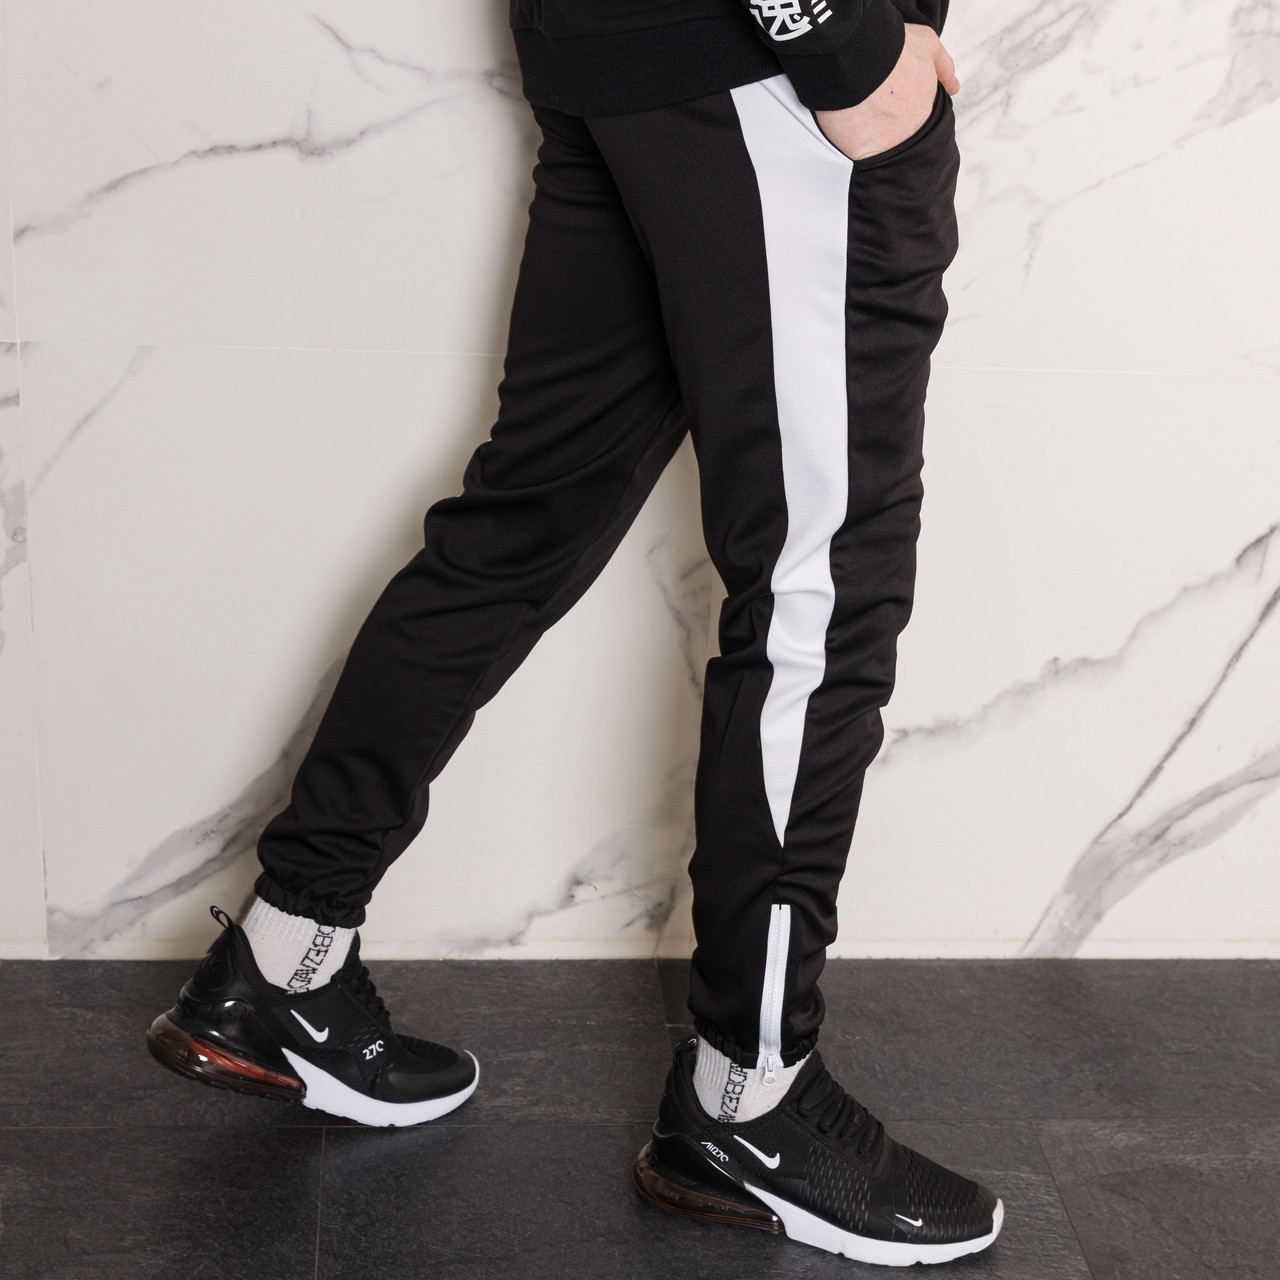 Спортивные штаны черные с белым лампасом мужские модель Rocky - Фото 8